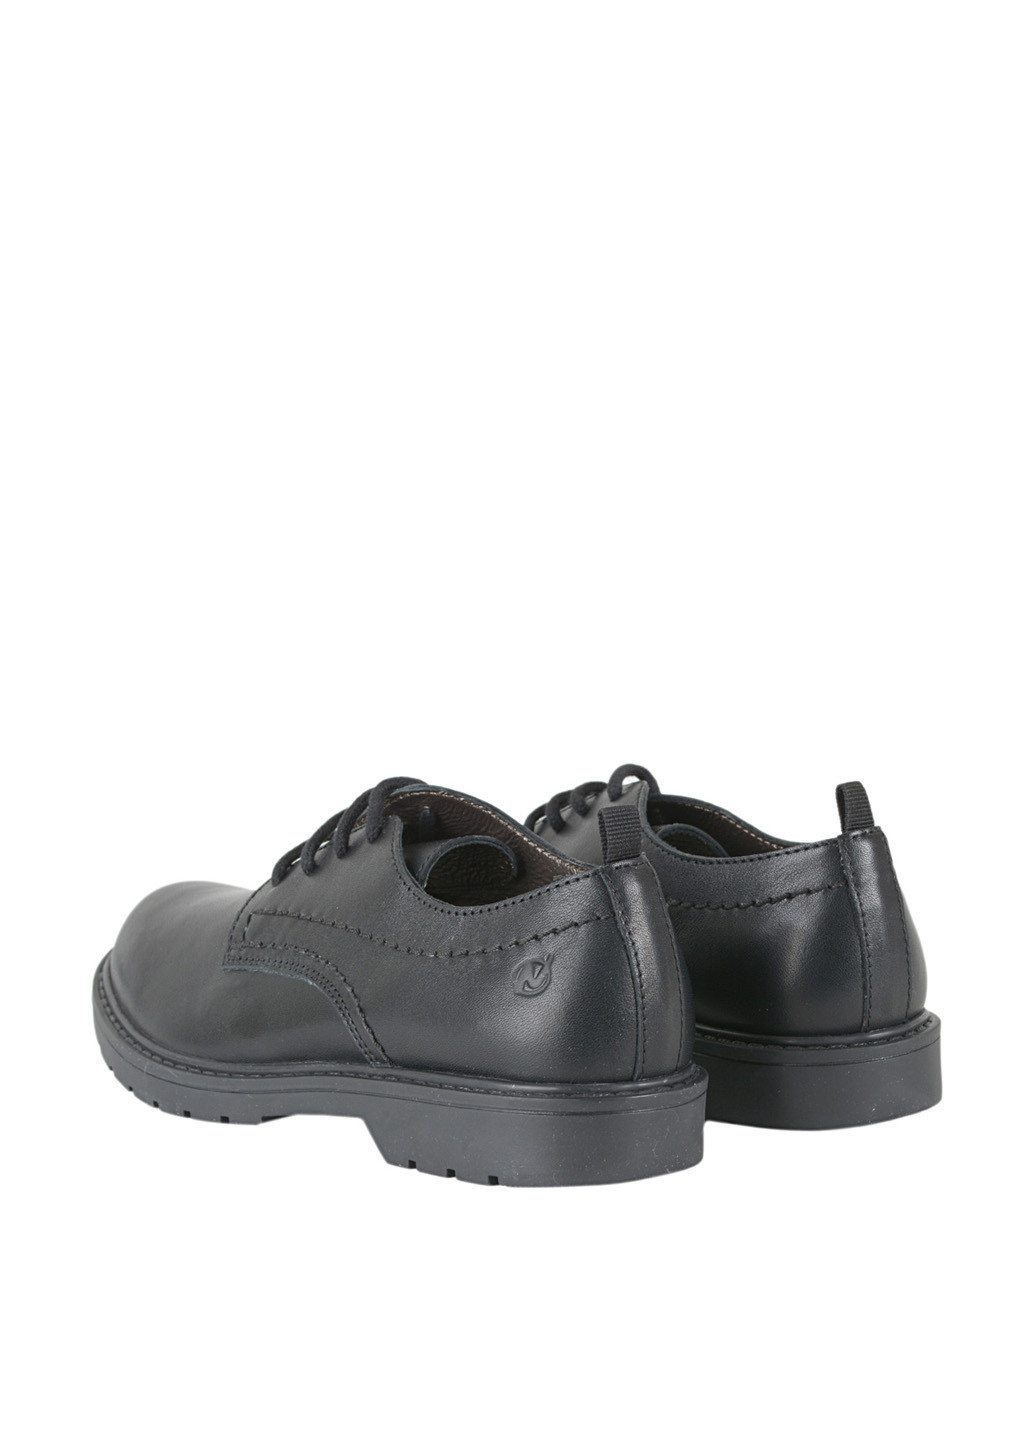 Черные туфли со шнурками Naturino